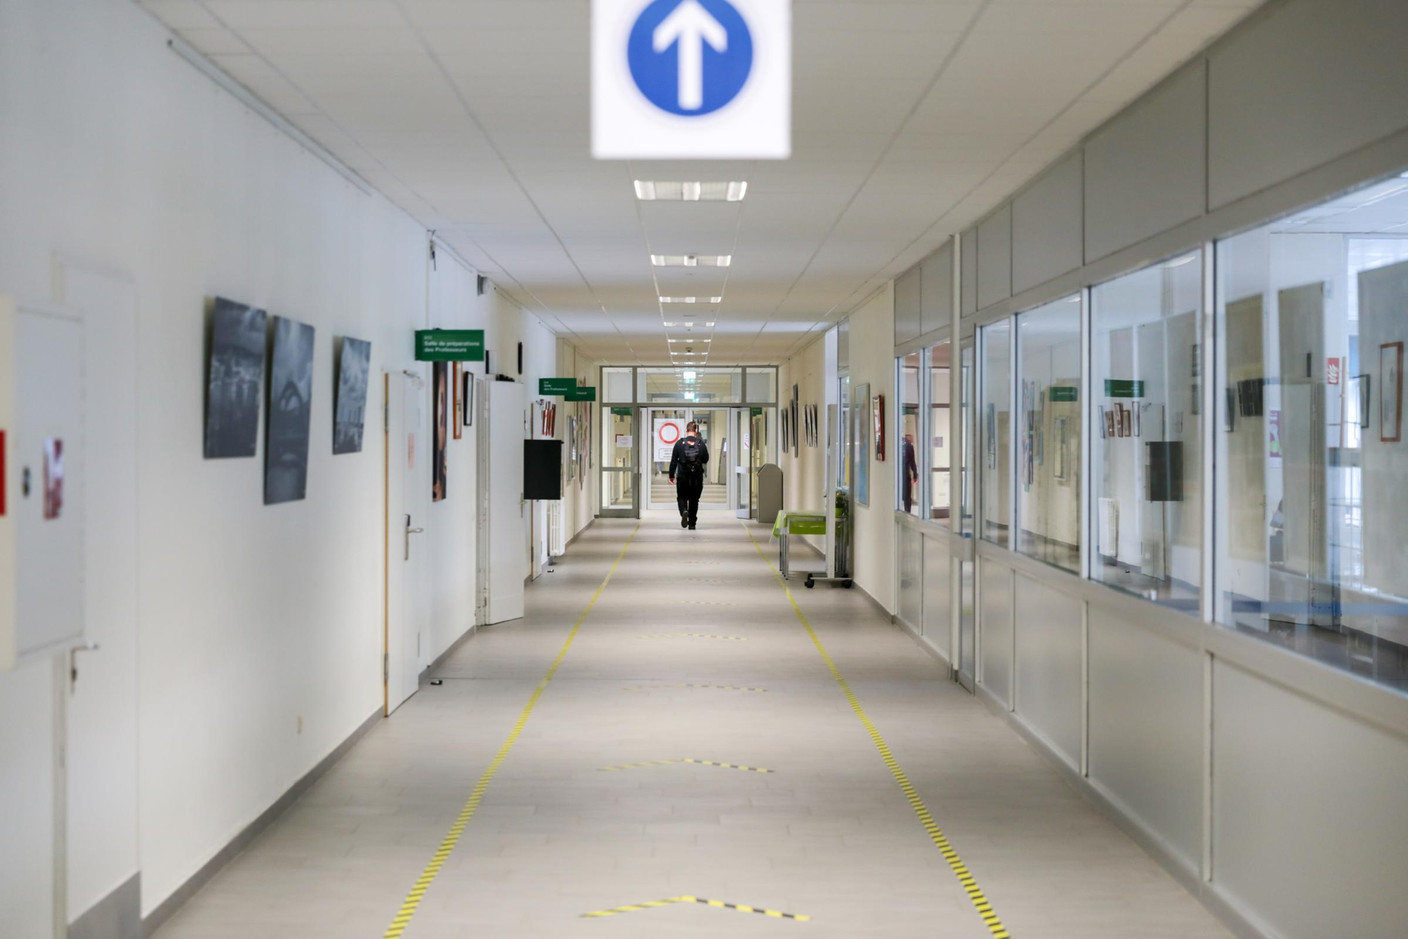 Les couloirs et lieux de passage sont balisés pour réguler le passage et les distances.  (Photo: Romain Gamba / Maison Moderne) 